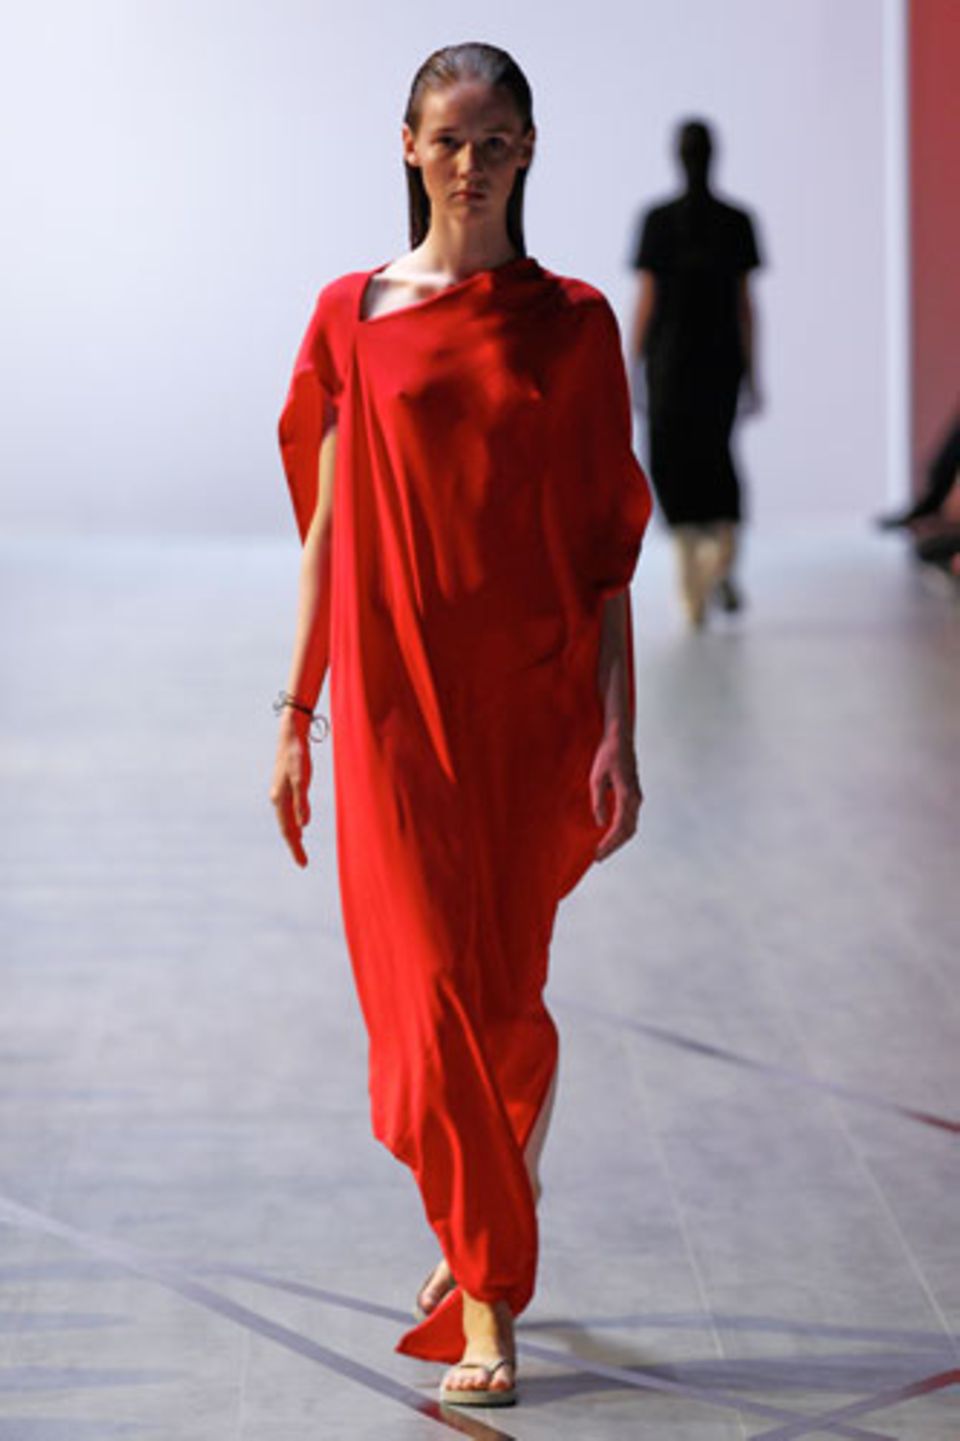 Ein letzter Farbtrend für den Sommer 2015: Es wird rot. Designer Michael Sontag präsentiert diesen Hingucker-Look.